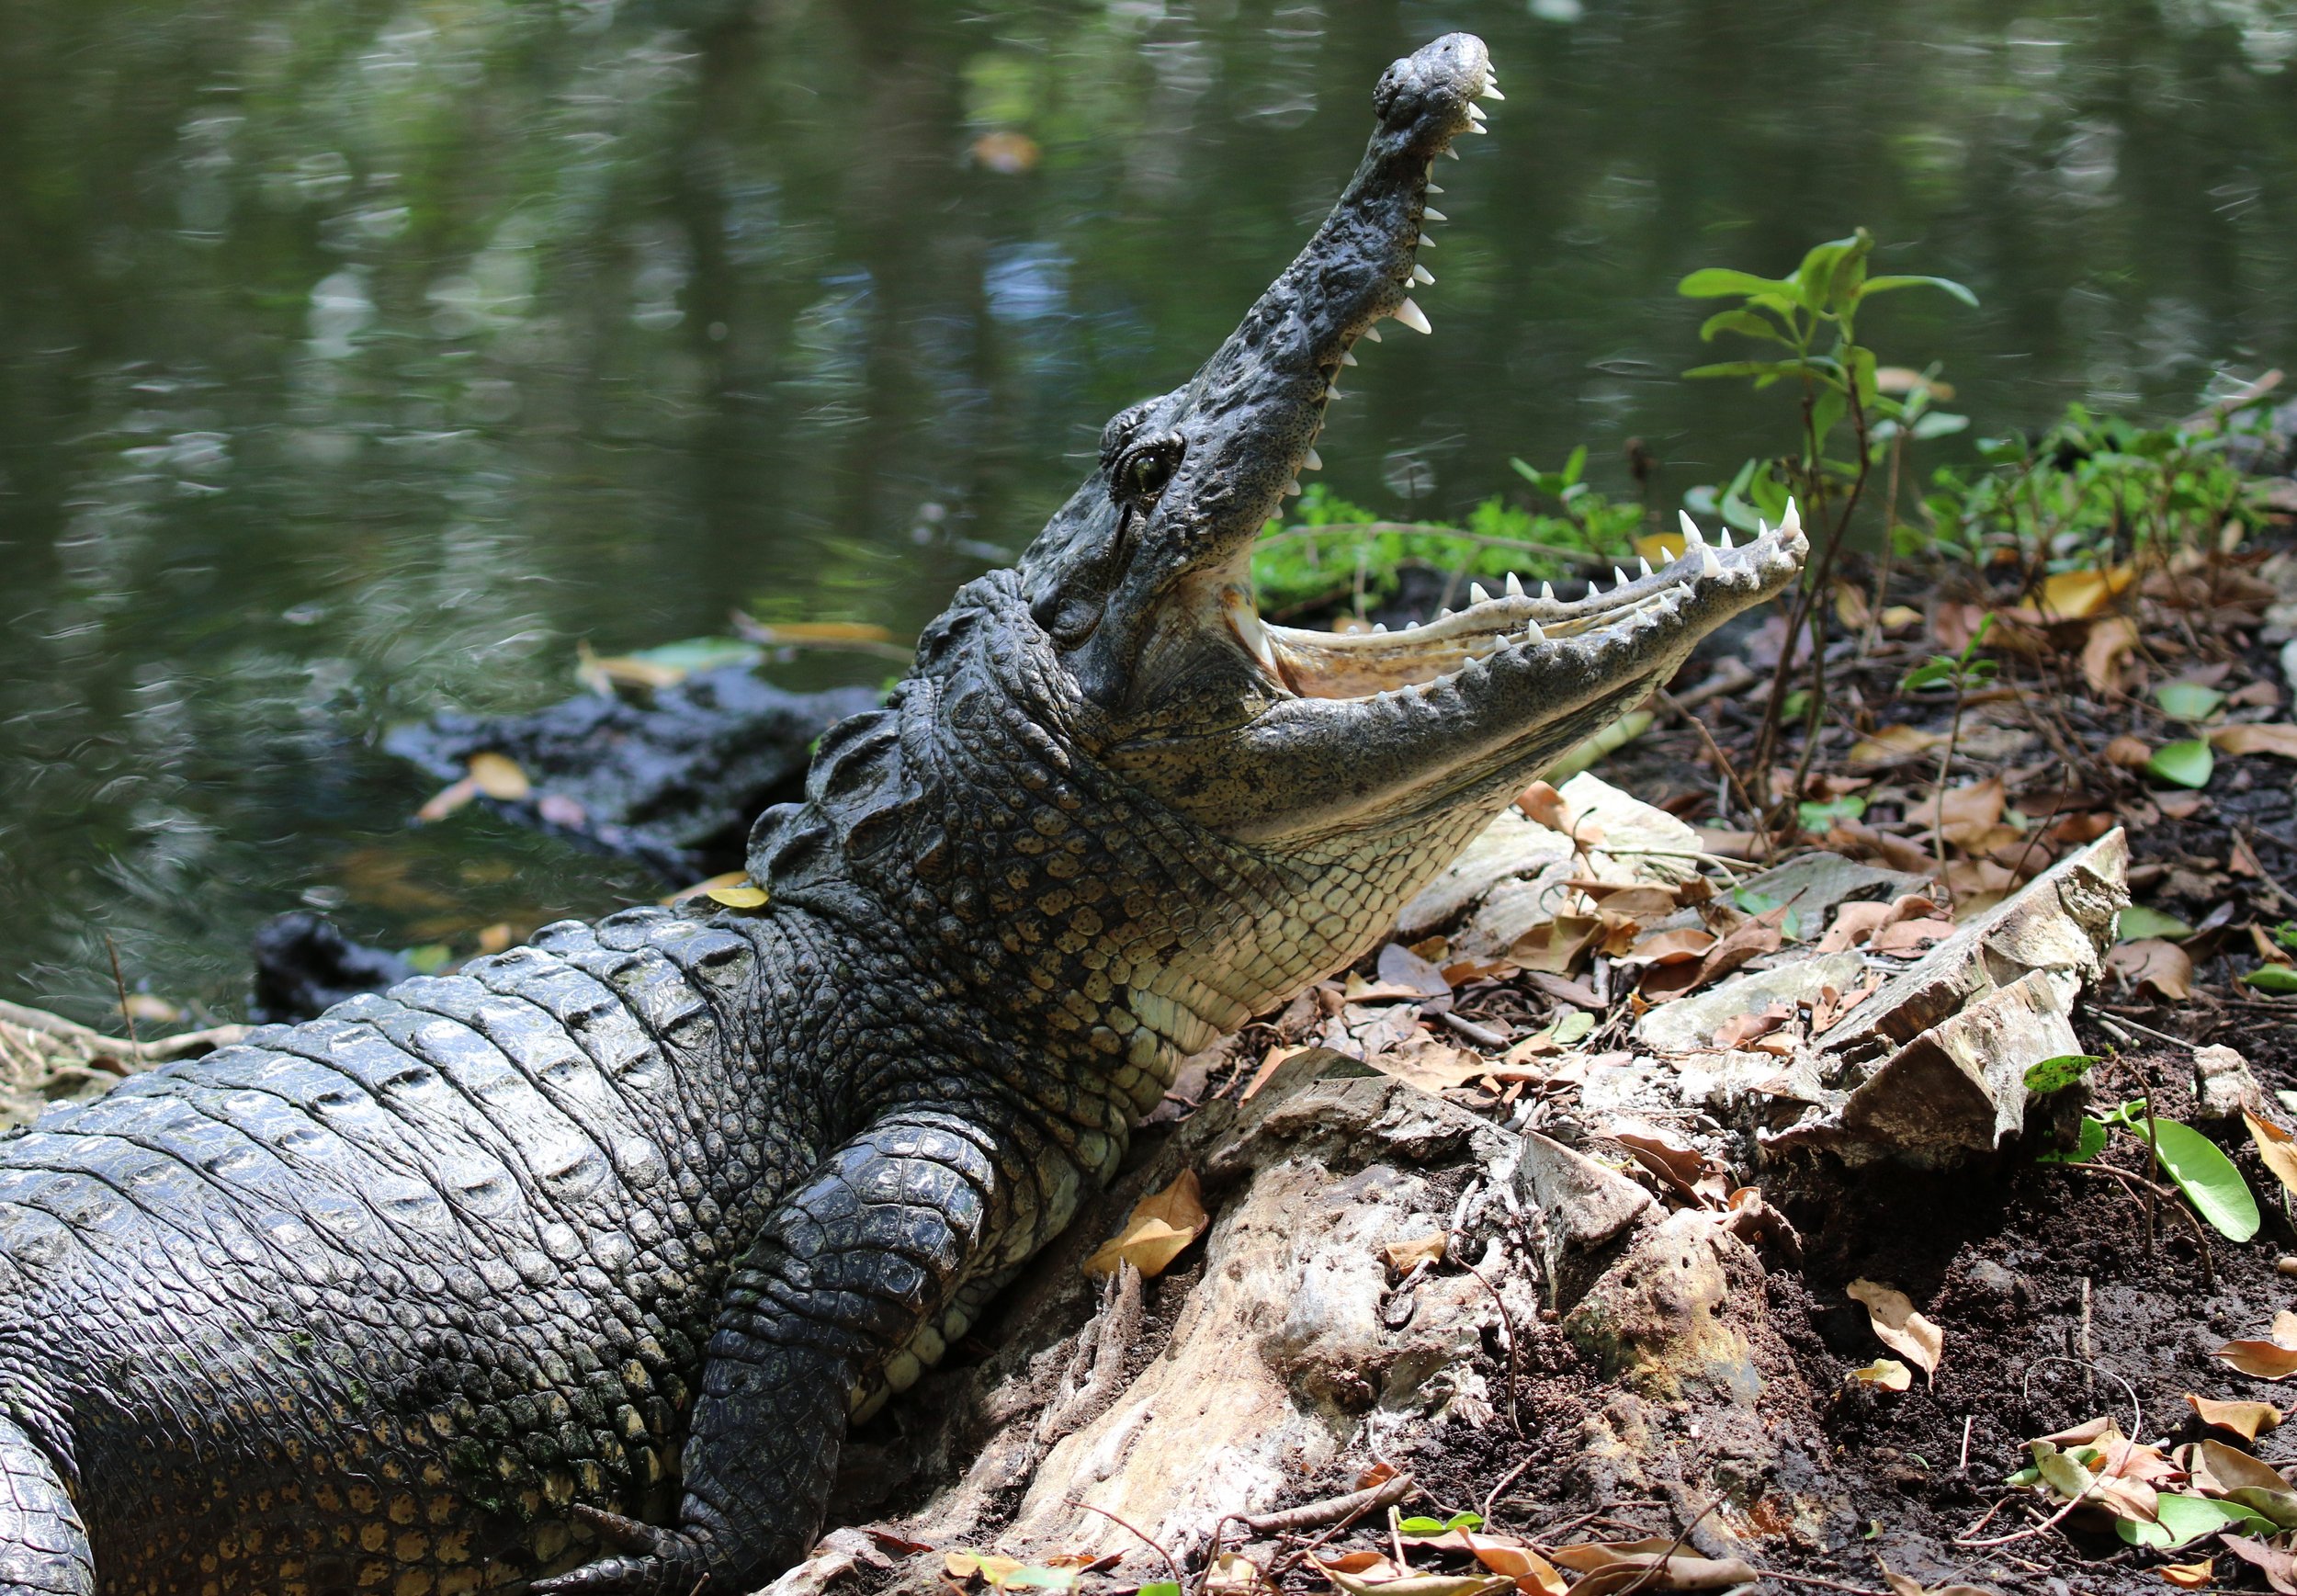 Morelet's Crocodile - photo by participant Diane Eubanks